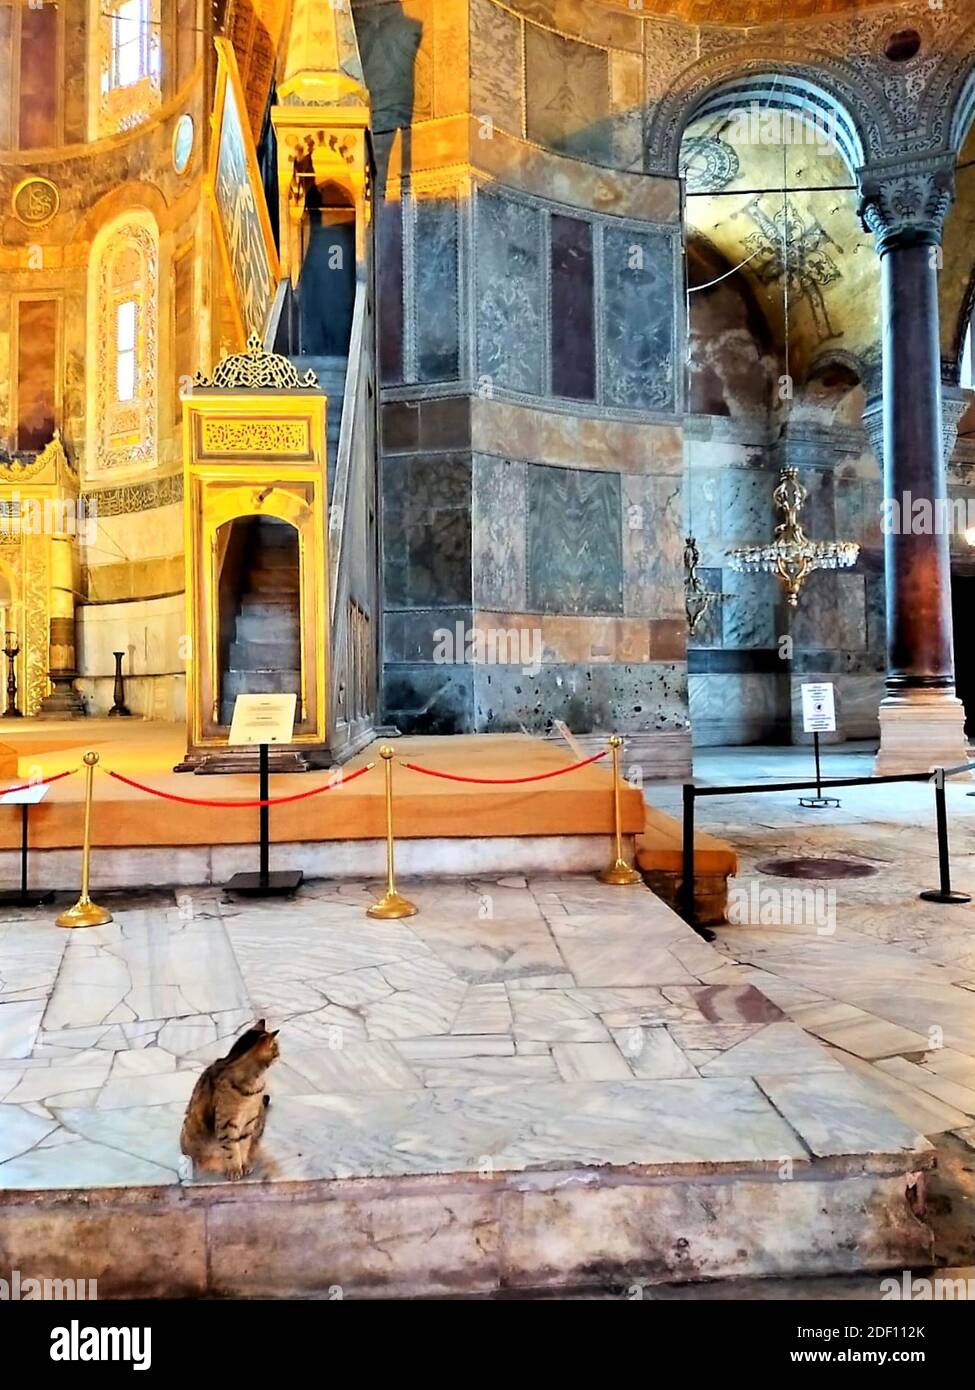 Museo Hagia Sophia e Cat gli., architettura bizantina, famoso punto di riferimento e meraviglia architettonica del mondo Istanbul, Turchia Foto Stock